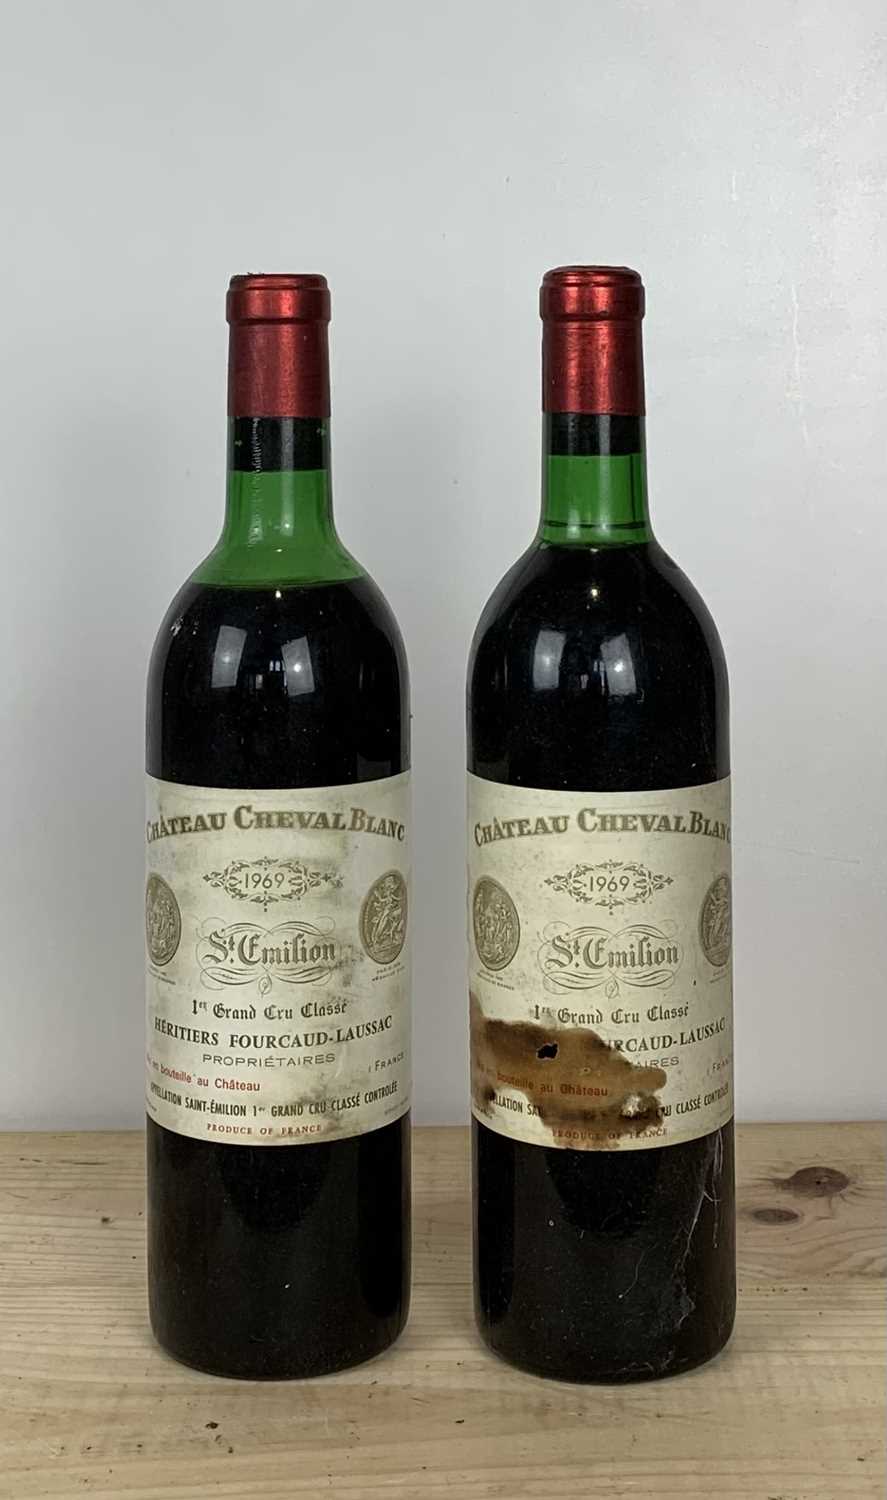 Lot 14 - 2 Bottles Chateau Cheval Blanc Premier Grand Cru Classe St.Emilion 1969 (vts & mus)